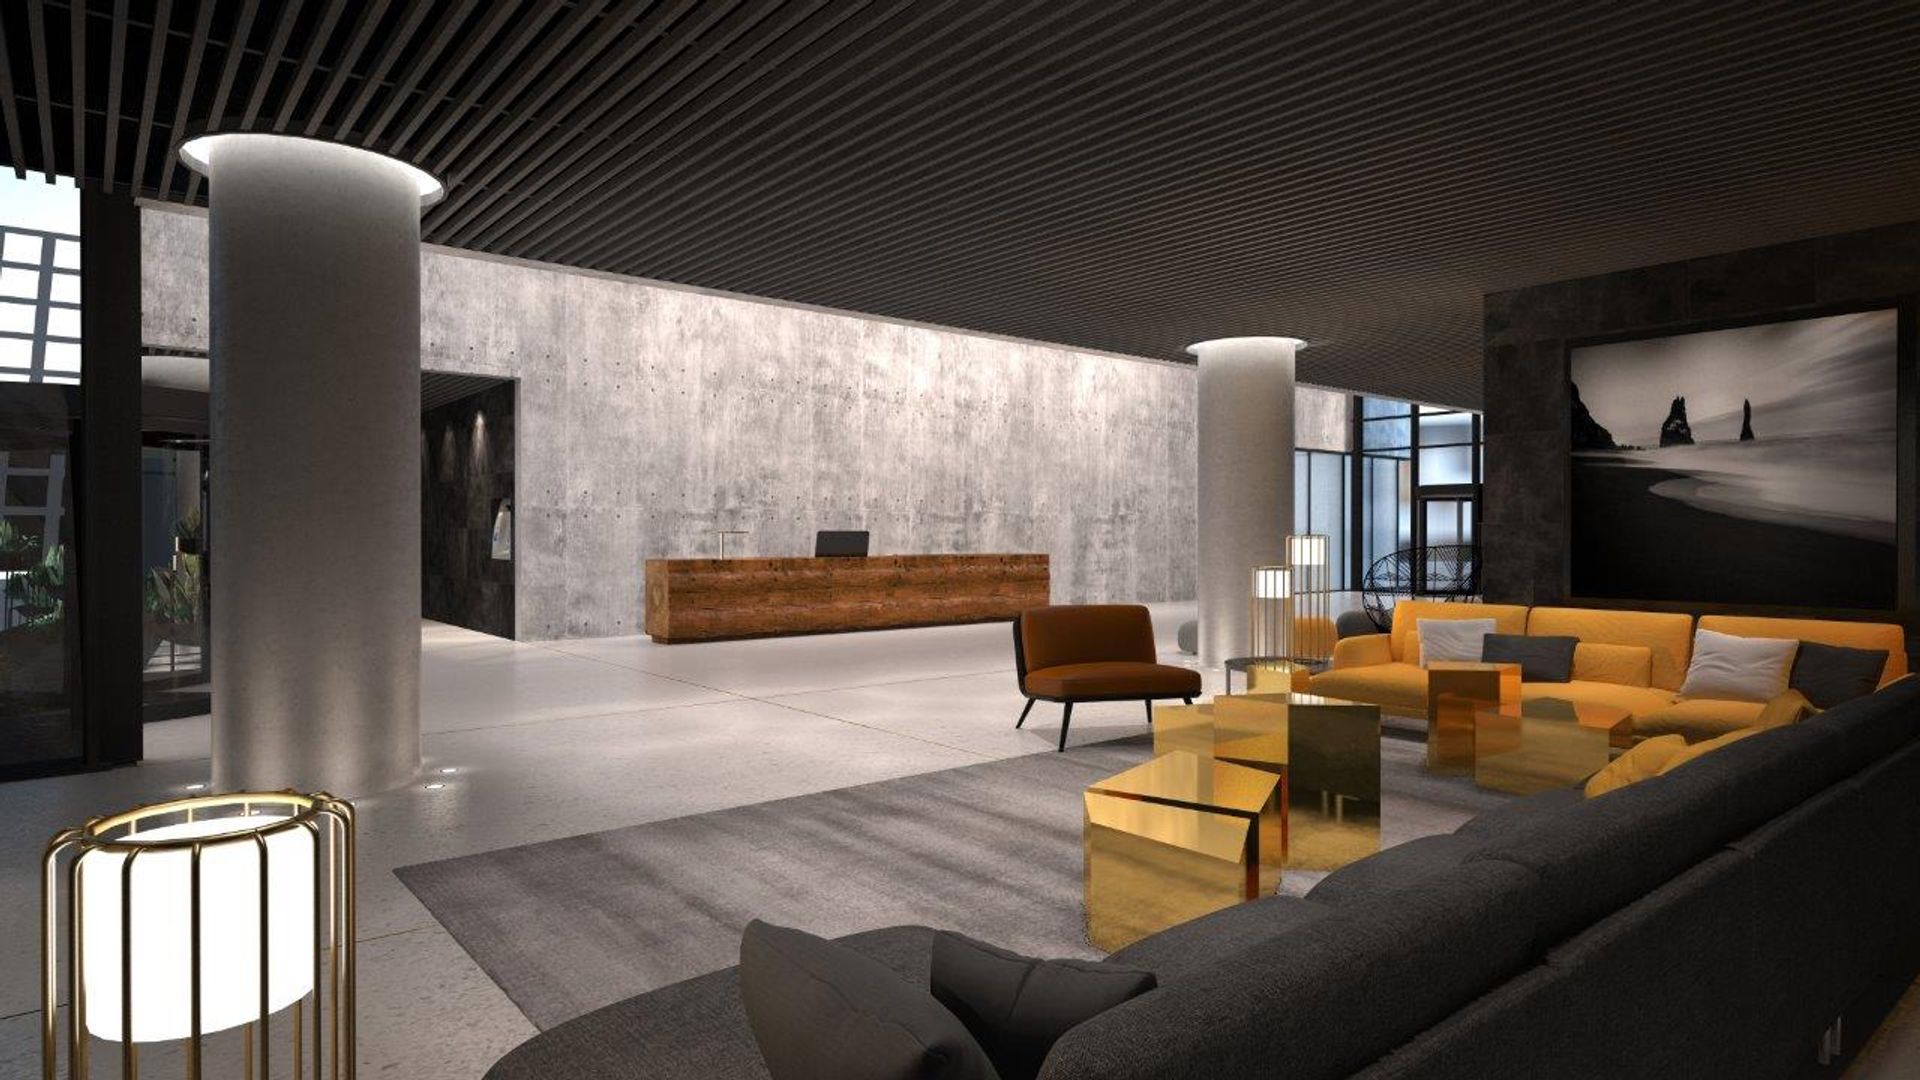  Intrygujący design lobby biurowca D48 autorstwa pracowni Robert Majkut Design